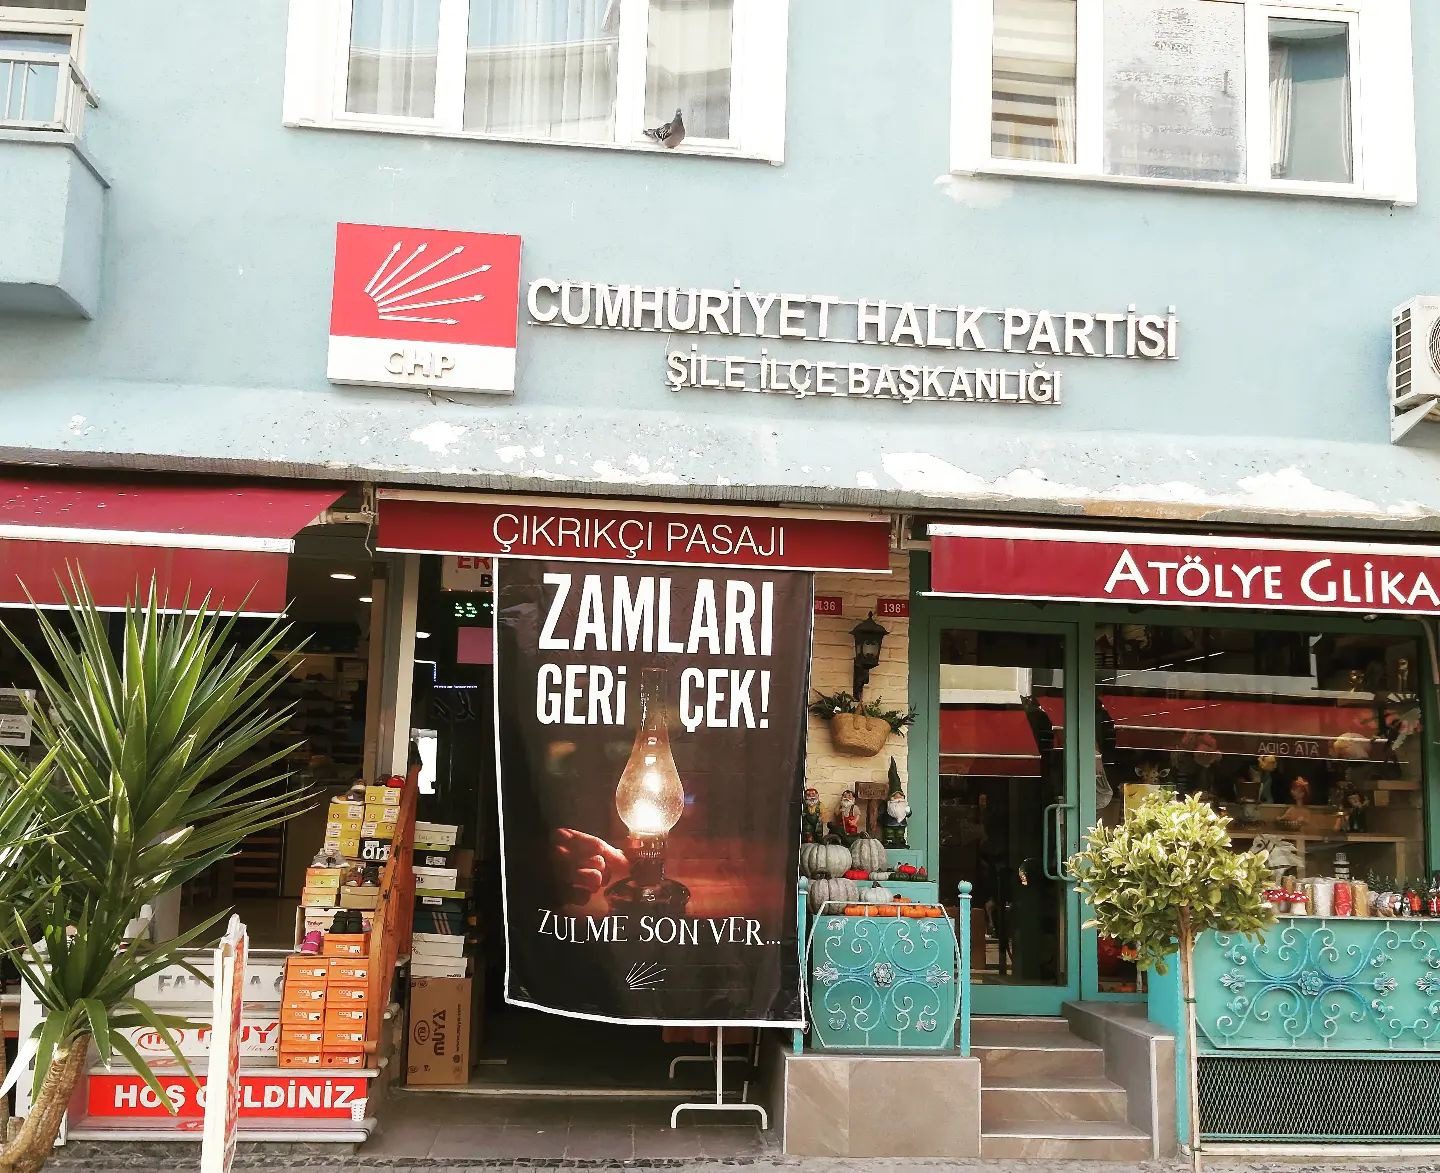 CHP Şile İlçe Başkanlığı tarafından bazı esnaf dükkânlarına “Zamları Geri Çek Zulme Son Ver” yazılı pankartlar asılmaya başlandı.  - chp sile